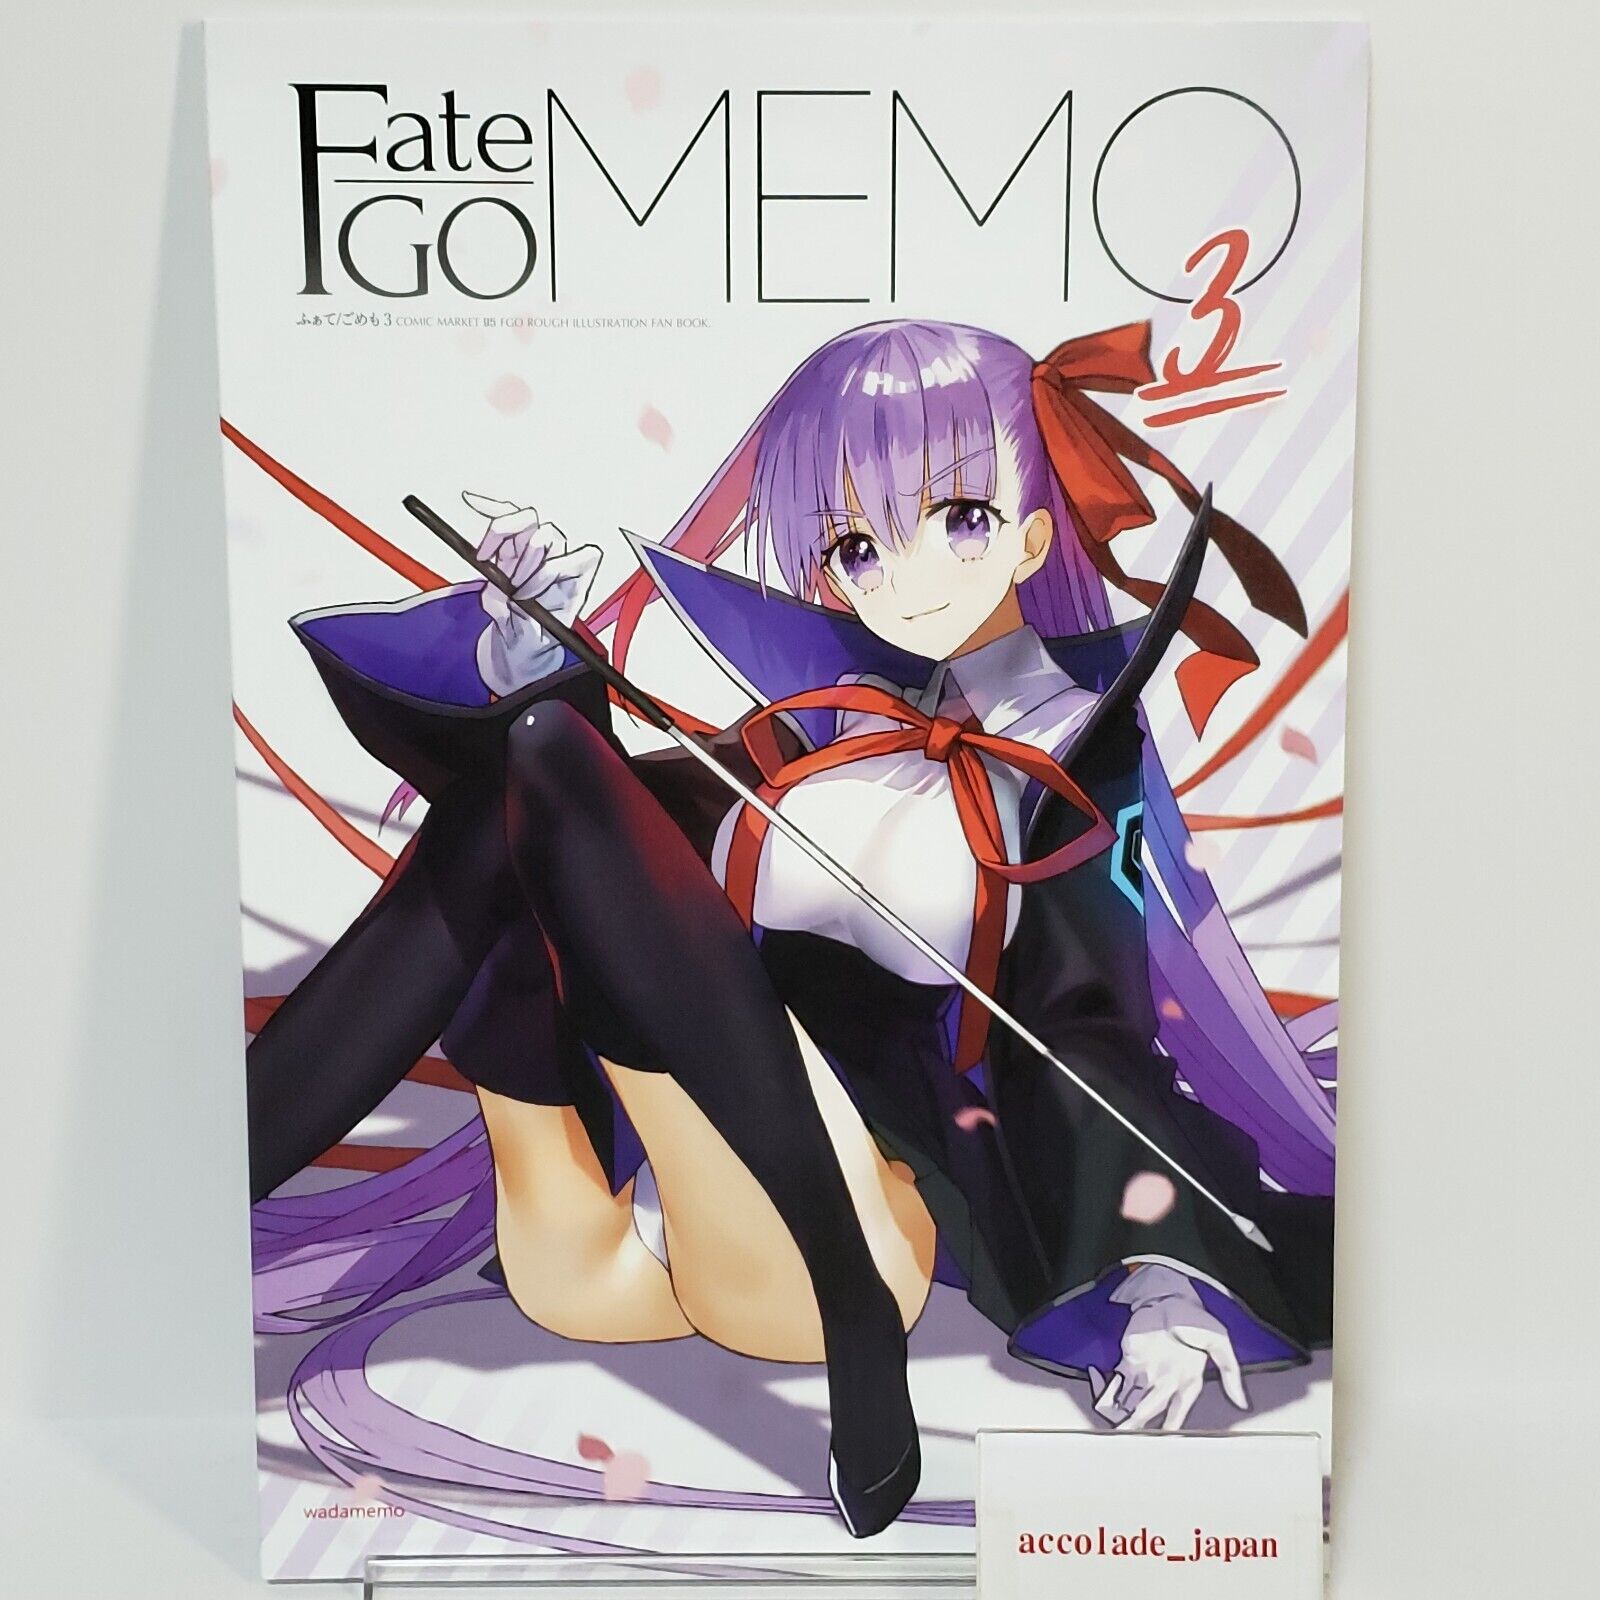 Fate/GO MEMO 3 Wada Arco Fate/Grand Order Art Book FGO A4/32P C95 Doujinshi